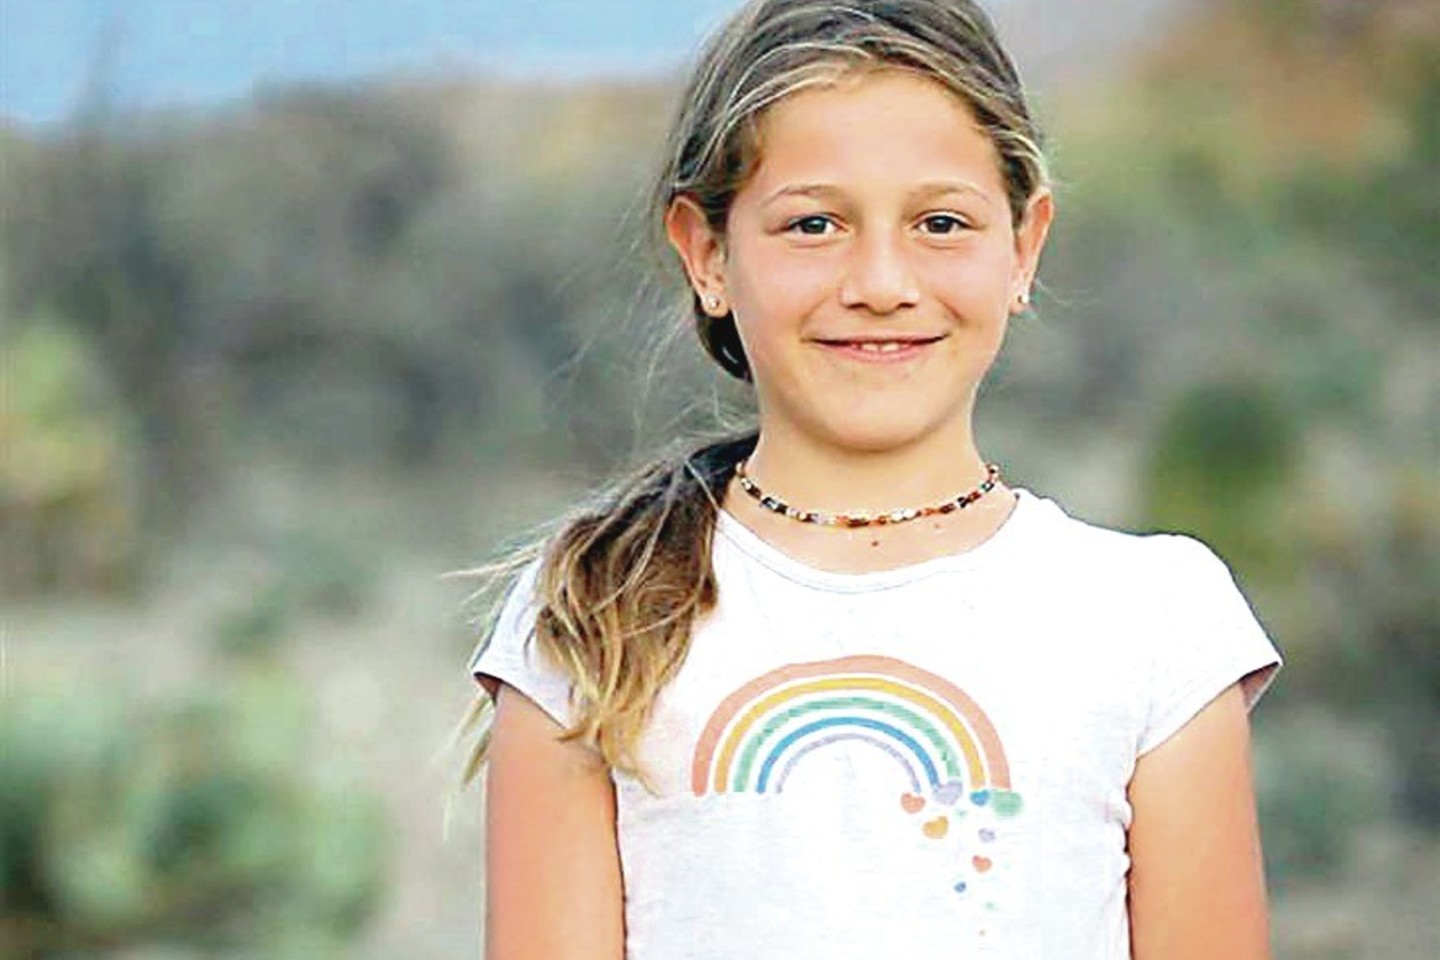 Josie Romero dar ketverių savo tėvams pranešė, kad jaučiasi esanti mergaitė.